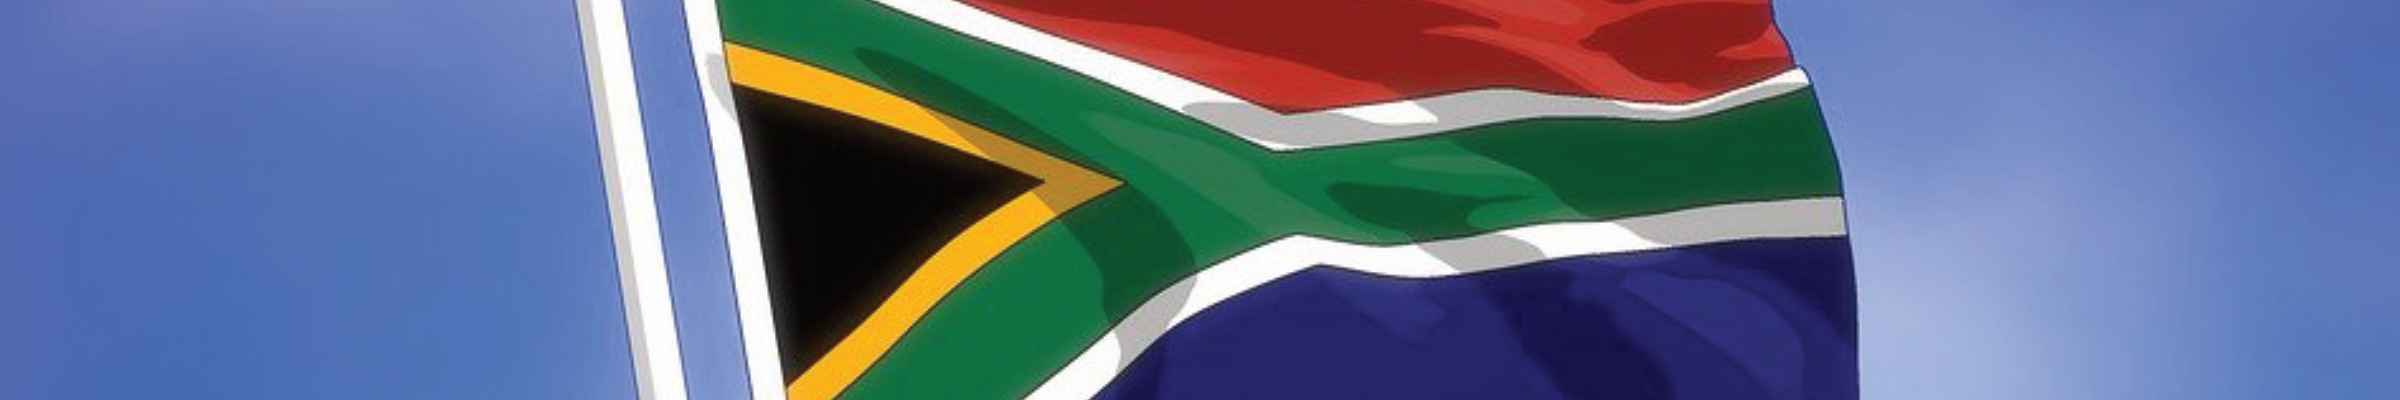 Vins d'Afrique du Sud : Retrouvez notre sélection !